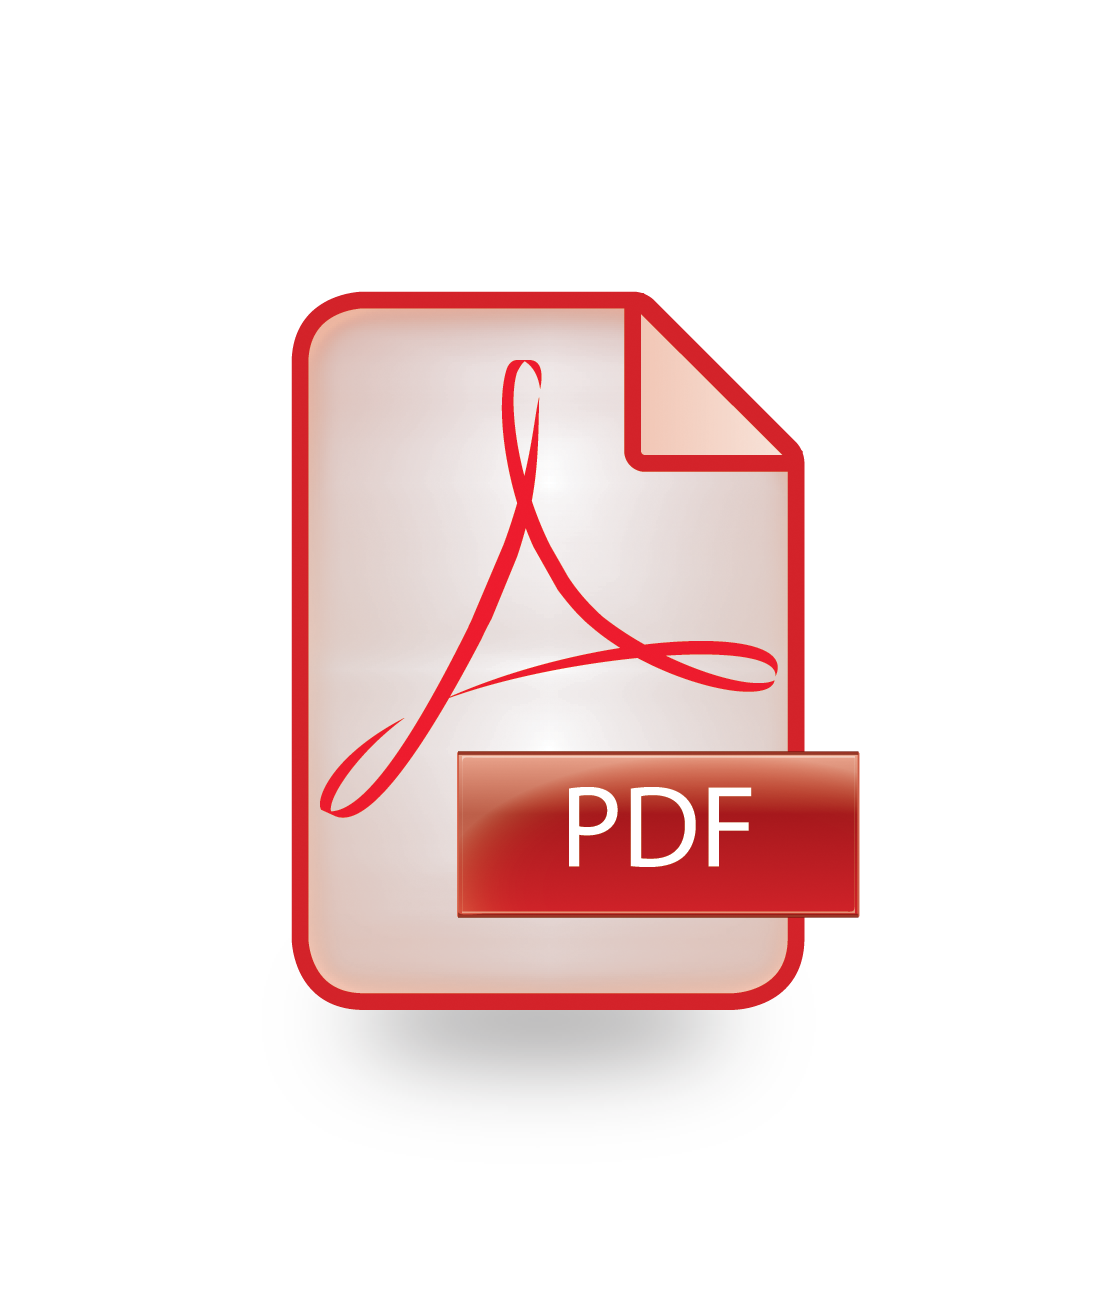 Pdf icon. Пдф файл. Иконка pdf файла. Логотип pdf. Ярлык pdf.